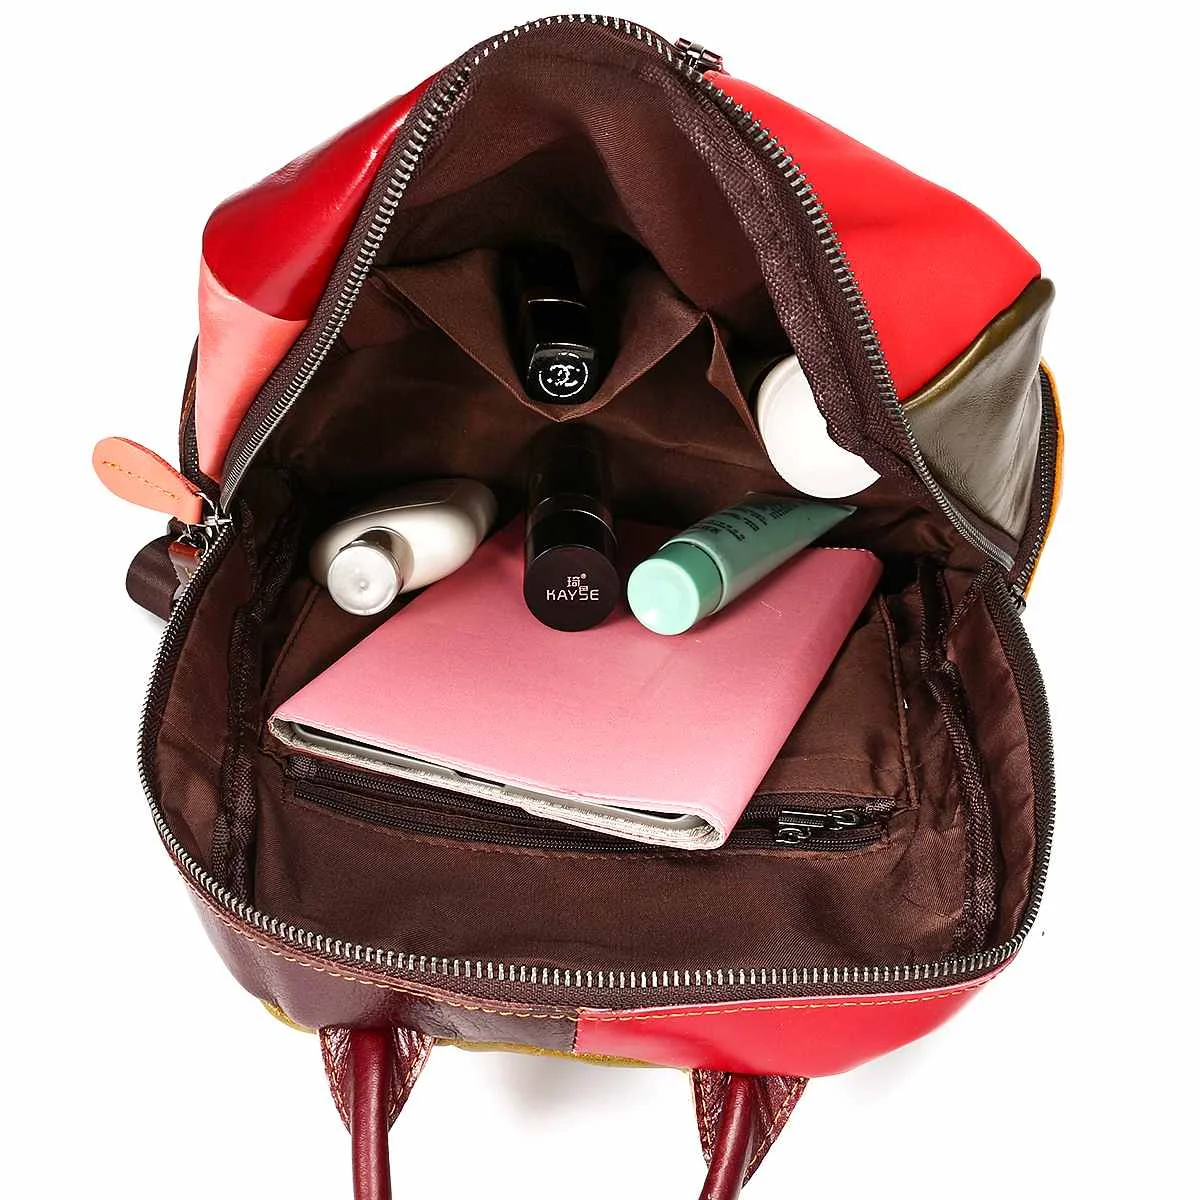 AEQUEEN Feminina Mochilas, женские рюкзаки из натуральной кожи, в стиле пэчворк, школьный рюкзак для девочек, цветной рюкзак, Ретро стиль, сумка на плечо для женщин